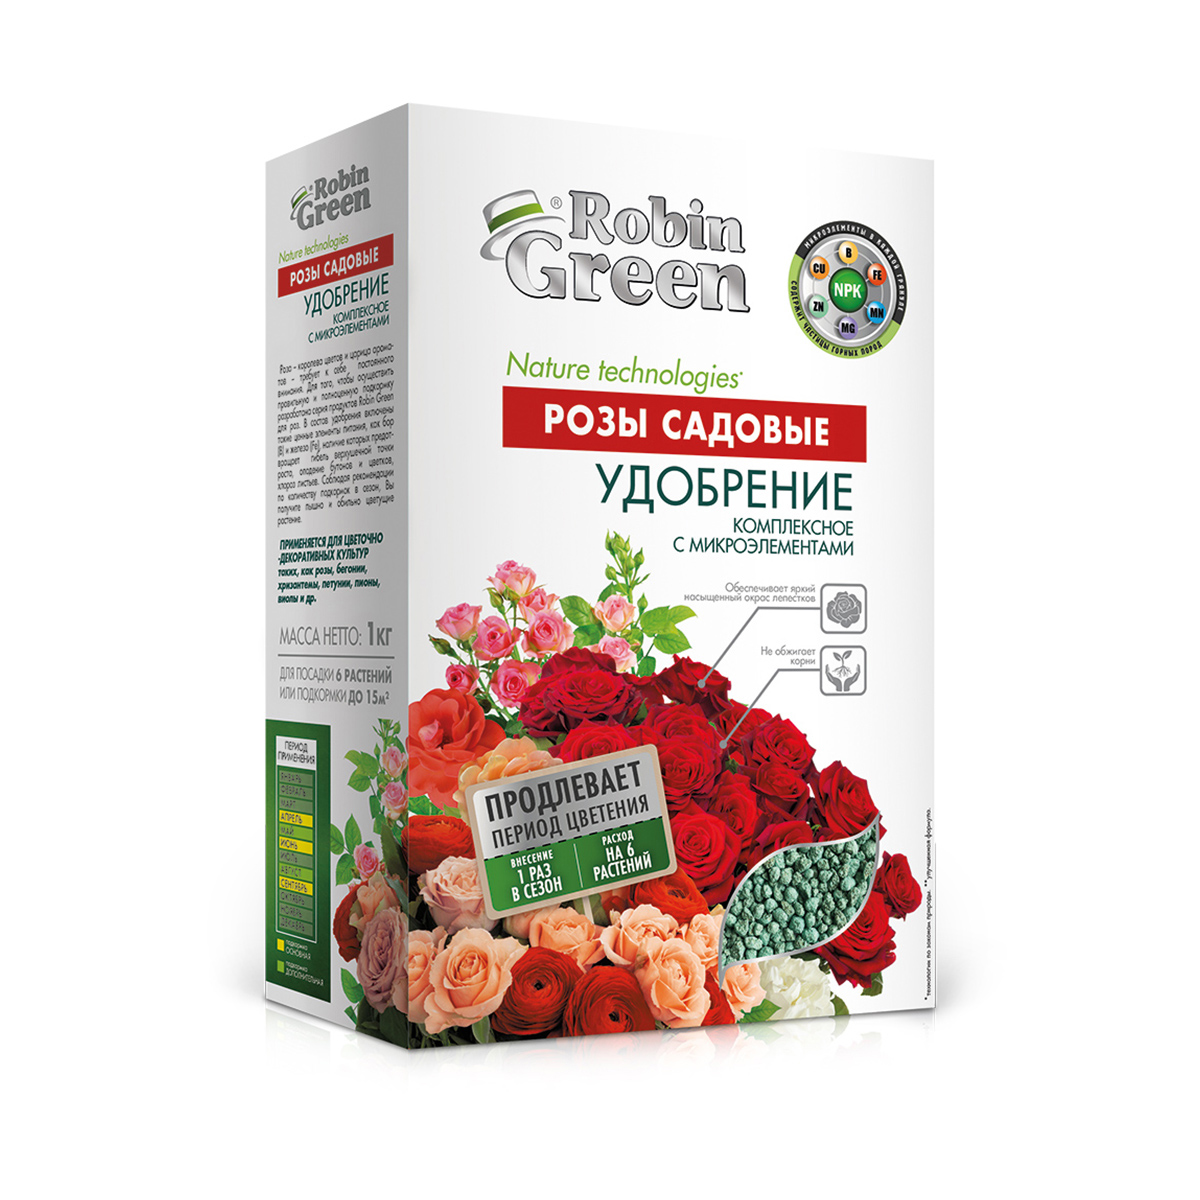 Удобрение "для садовых роз" 1 кг (12) робин грин "фаско"